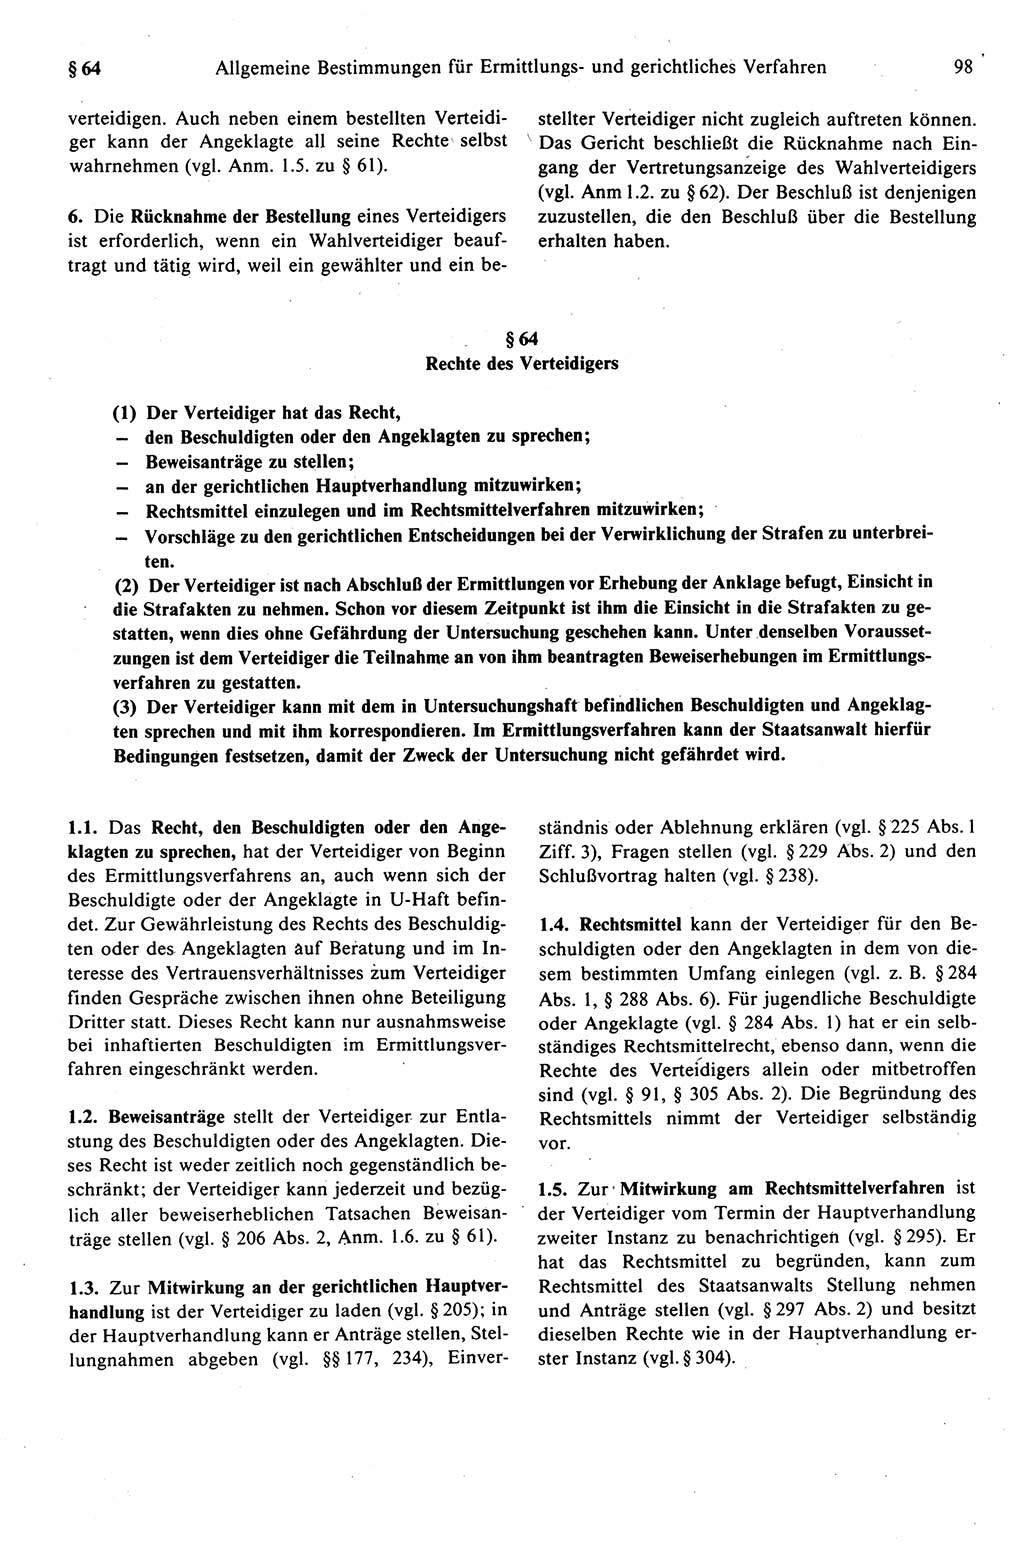 Strafprozeßrecht der DDR (Deutsche Demokratische Republik), Kommentar zur Strafprozeßordnung (StPO) 1989, Seite 98 (Strafprozeßr. DDR Komm. StPO 1989, S. 98)